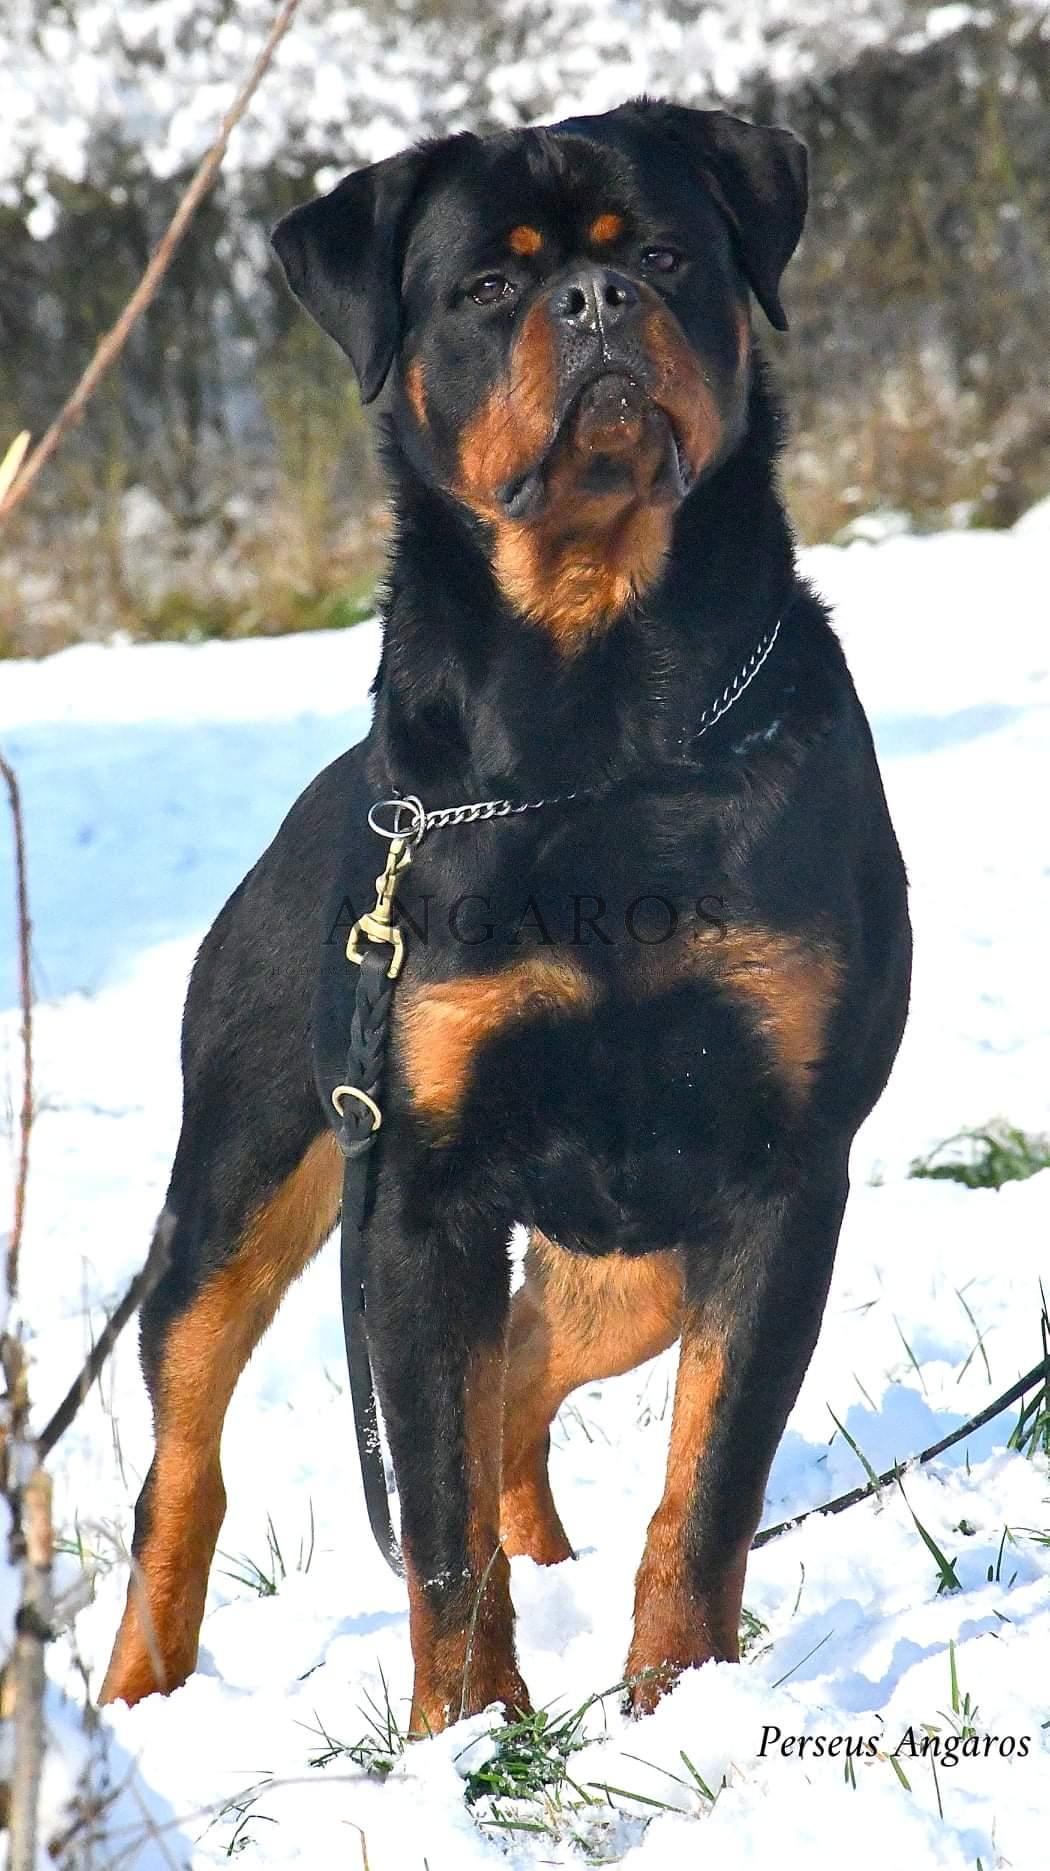 W zimowej scenerii przepiękny młodzieżowy rottweiler – PERSEUS Angaros w wieku 10 miesięcy! | Rottweiler - Hodowla Rottweilerów Angaros - Rottweilers - Rottweilery